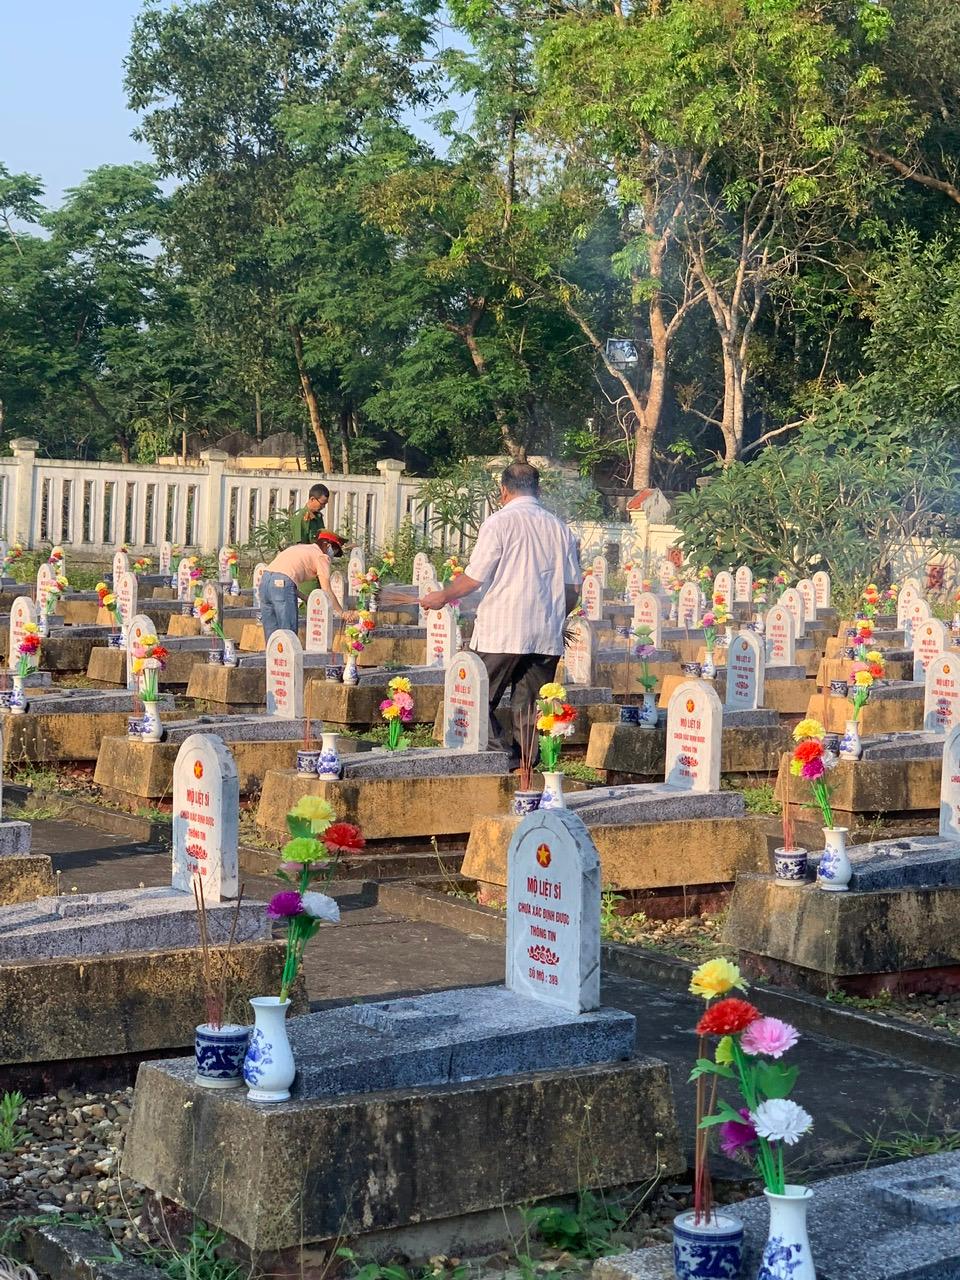 Viếng nghĩa trang liệt sỹ xã nhân dịp kỷ niệm 52 năm ngày giải phóng huyện Cam Lộ (02/4/1972-02/4/2024)